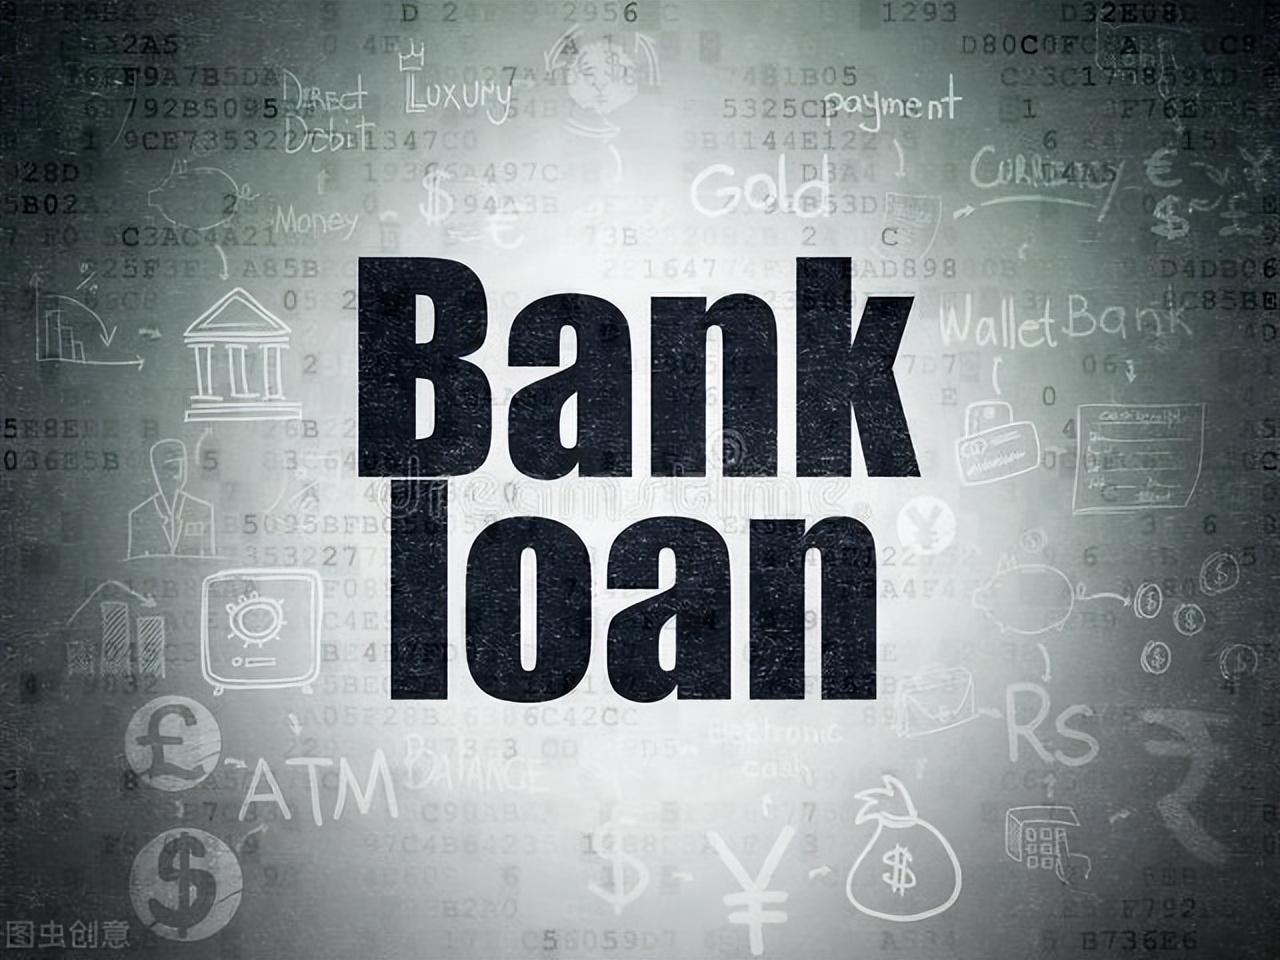 套取金融机构贷款转贷如何理解？如何判断是套取金融机构贷款转贷？该民间借贷合同的效力如何？